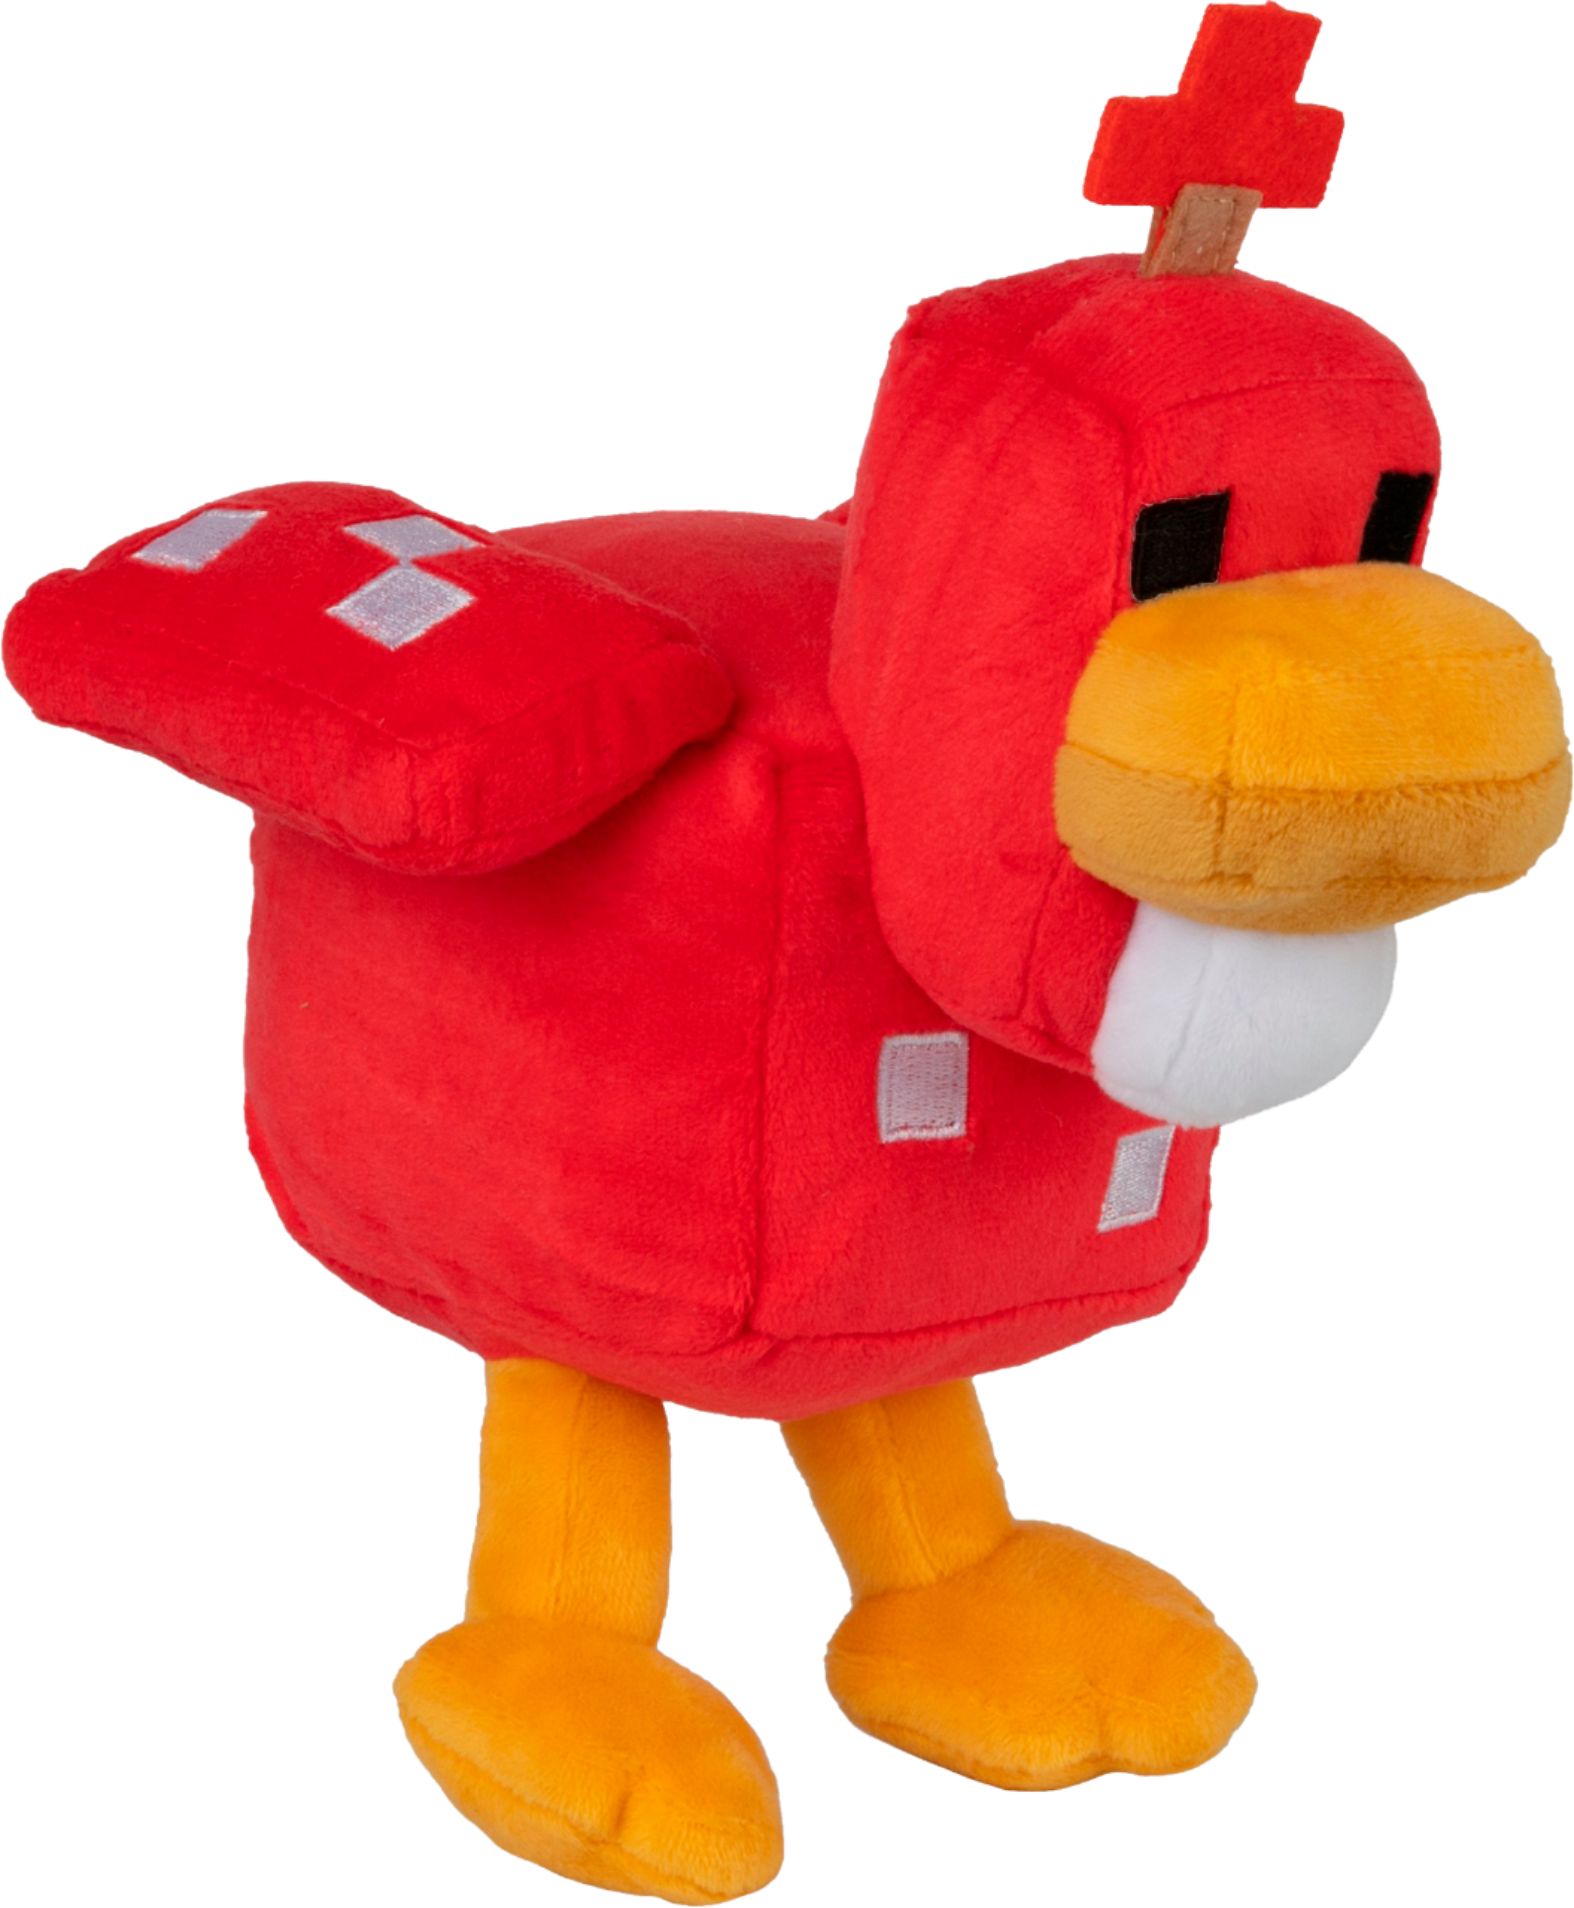 minecraft chicken plush